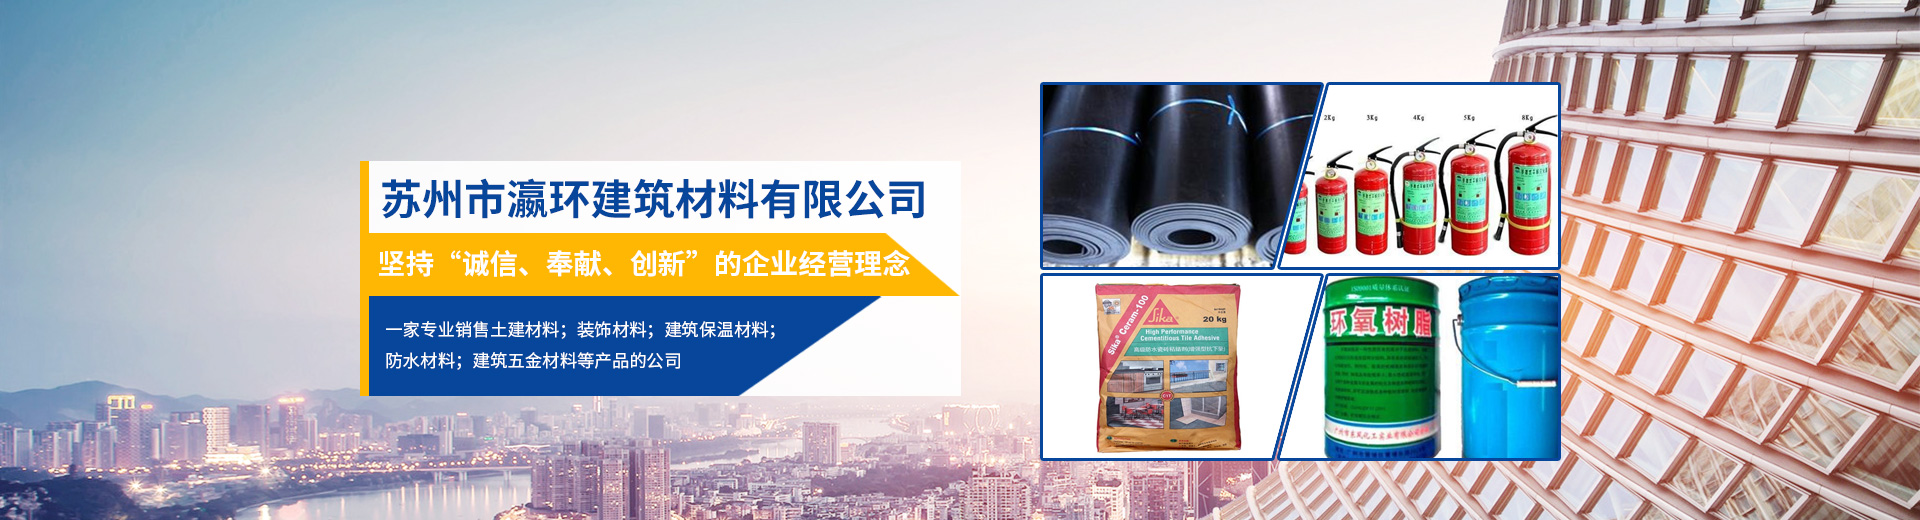 必赢bwin线路检测中心(中国)股份有限公司_产品6420